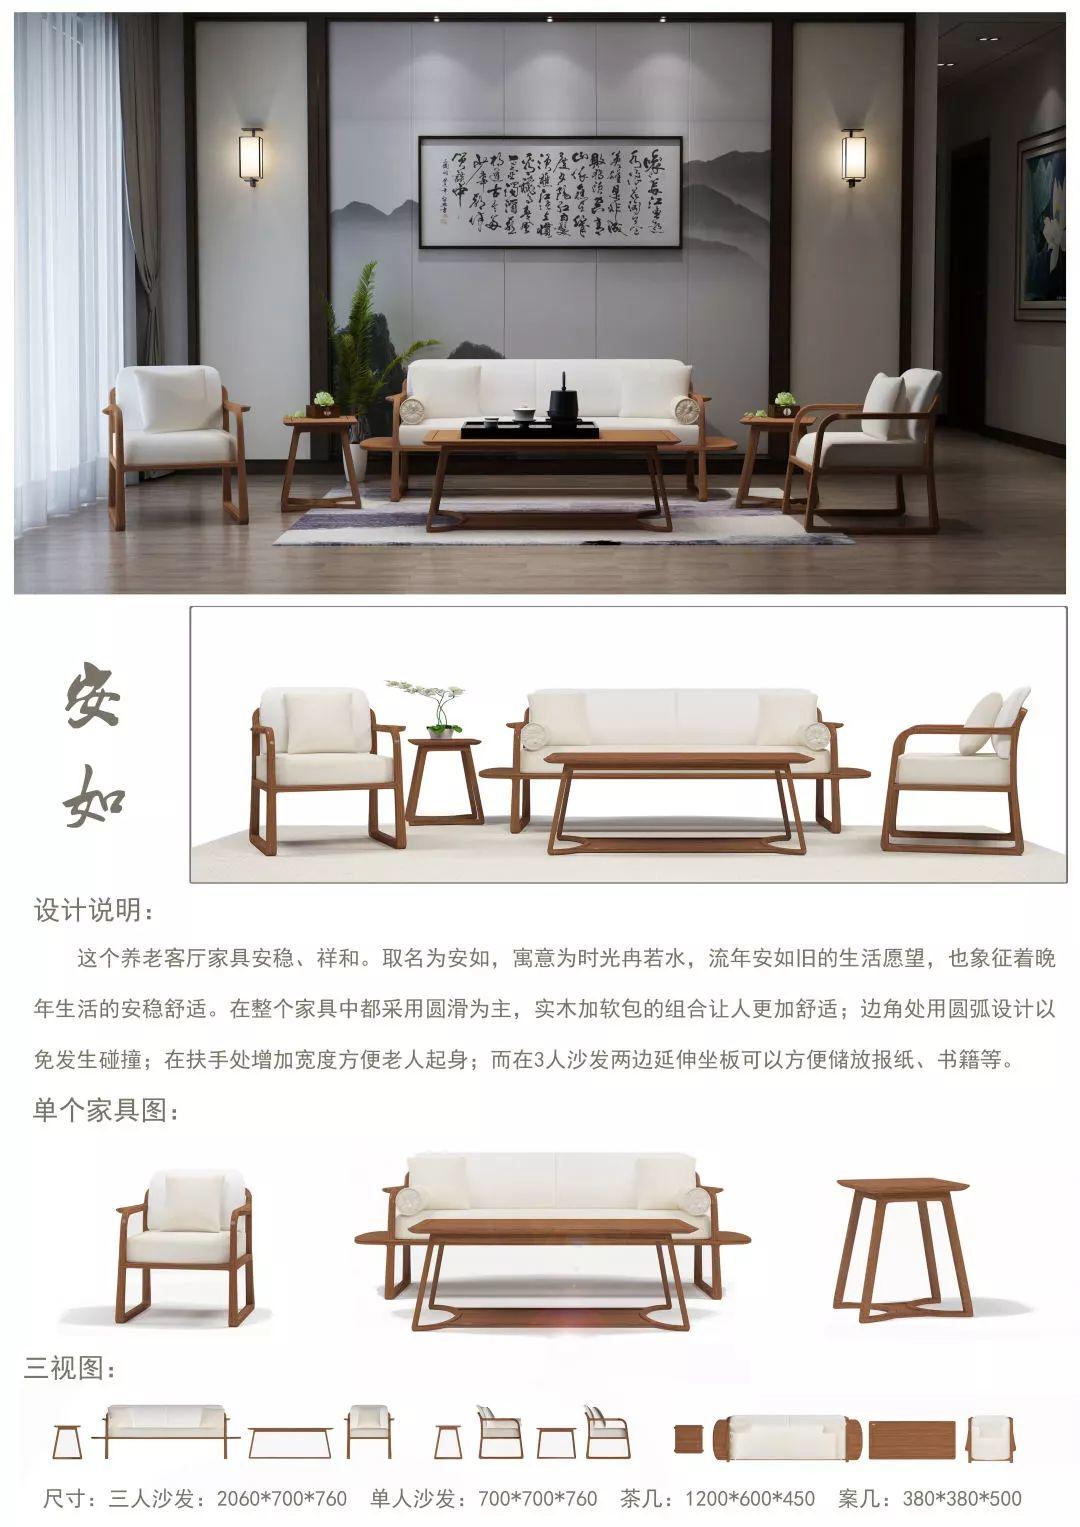 华南农业大学艺术学院c 工作室)点评:"安如"客厅系列家具,以老年人